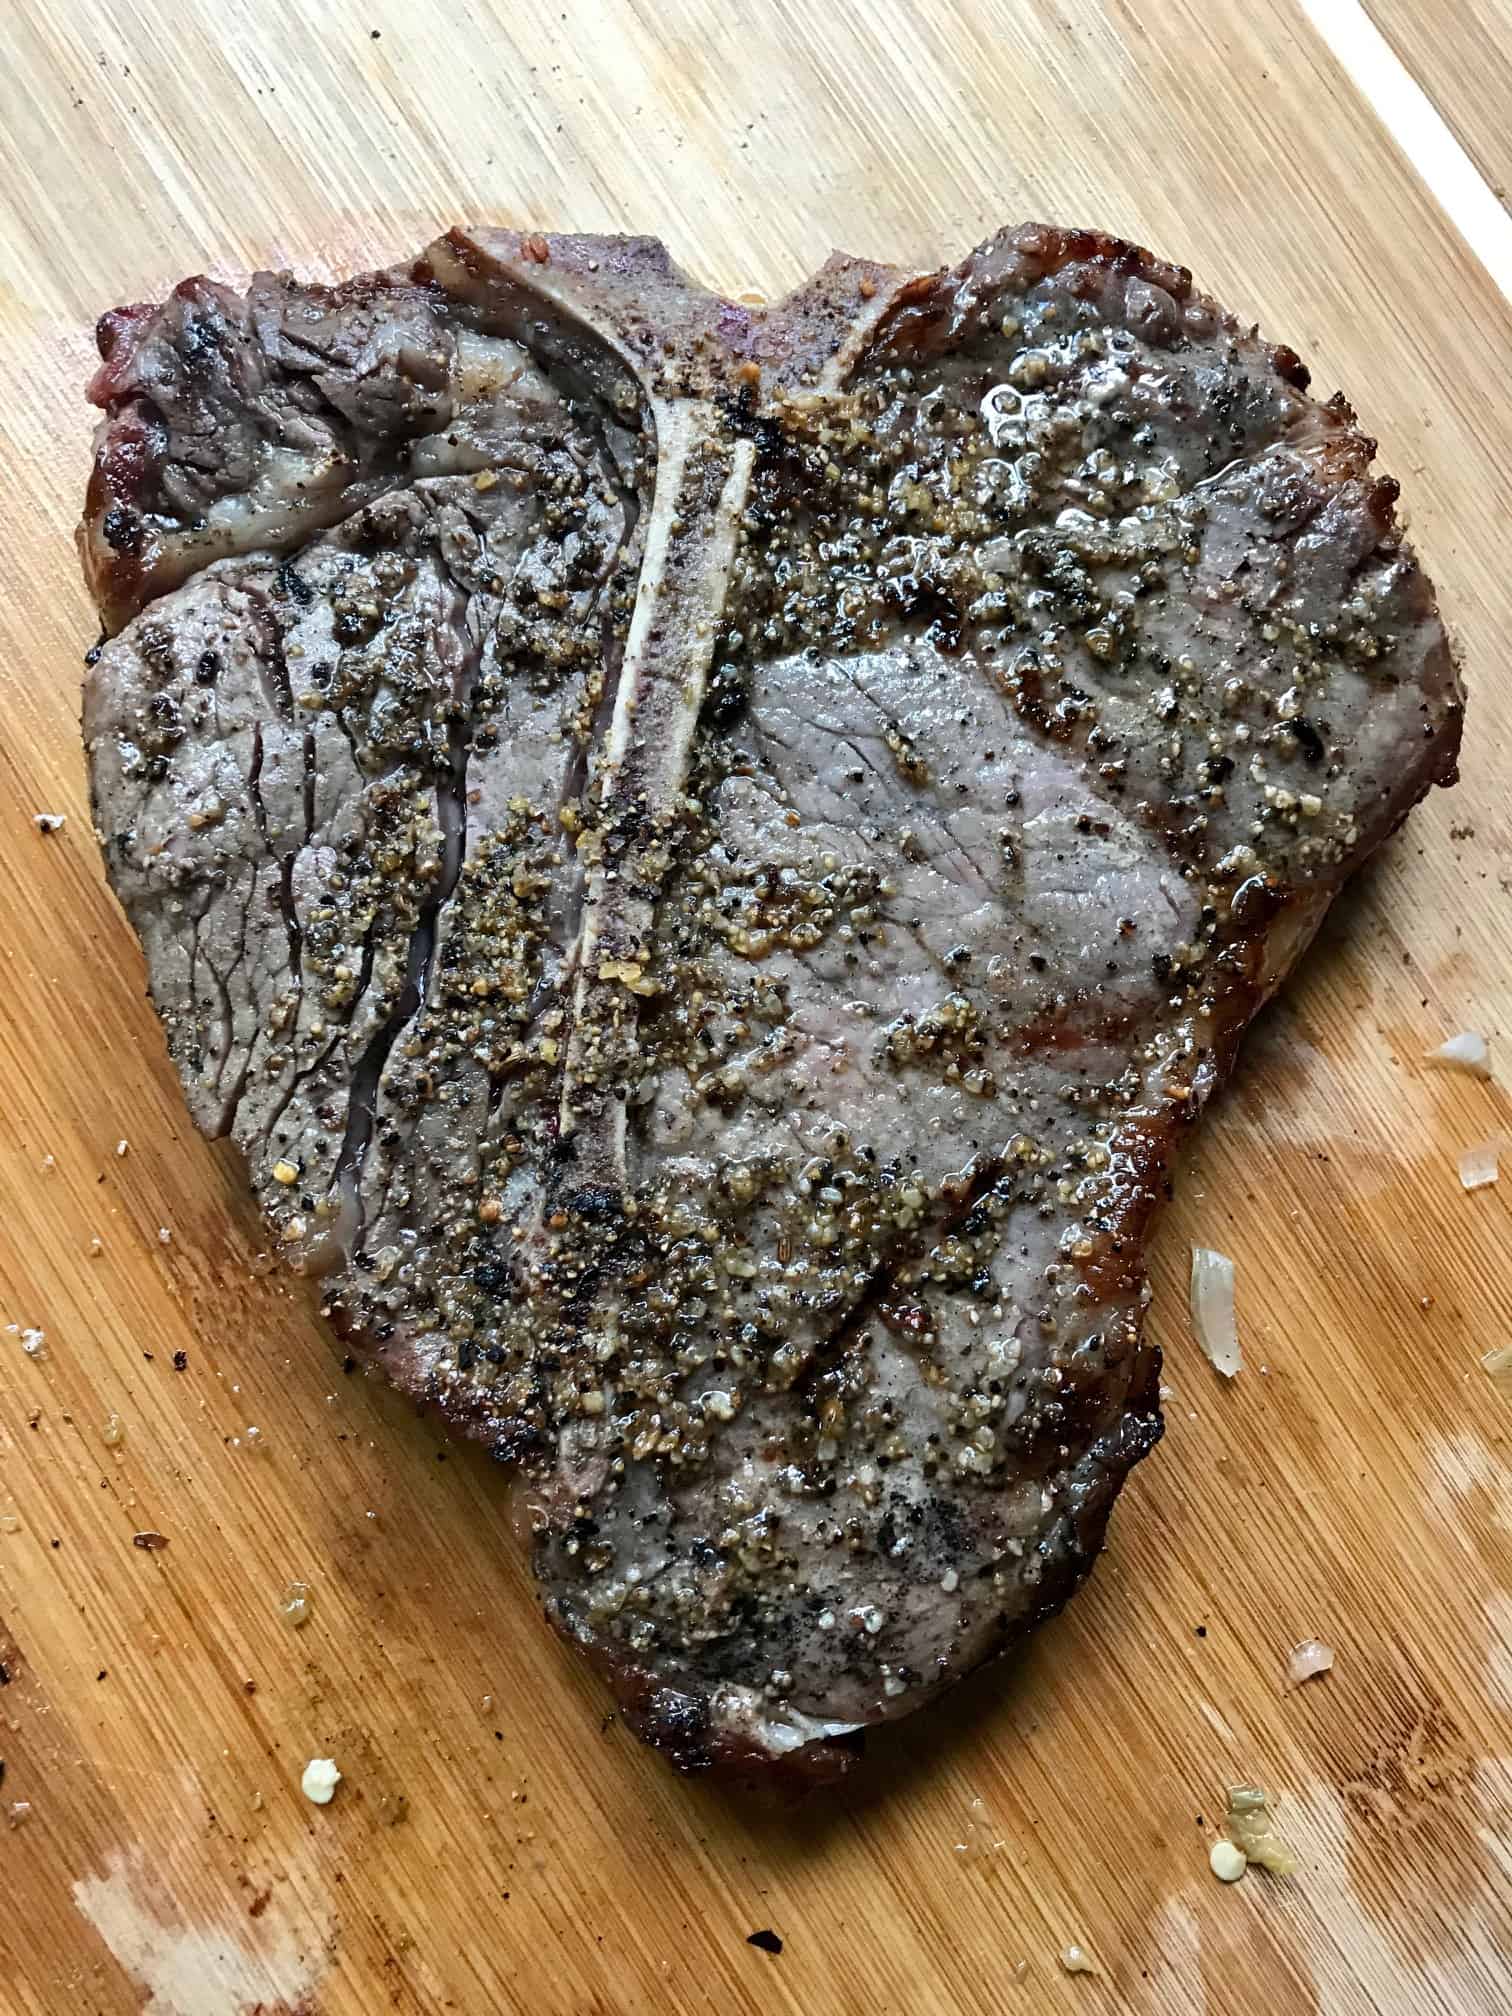 Reverse Sear Steak on cutting board